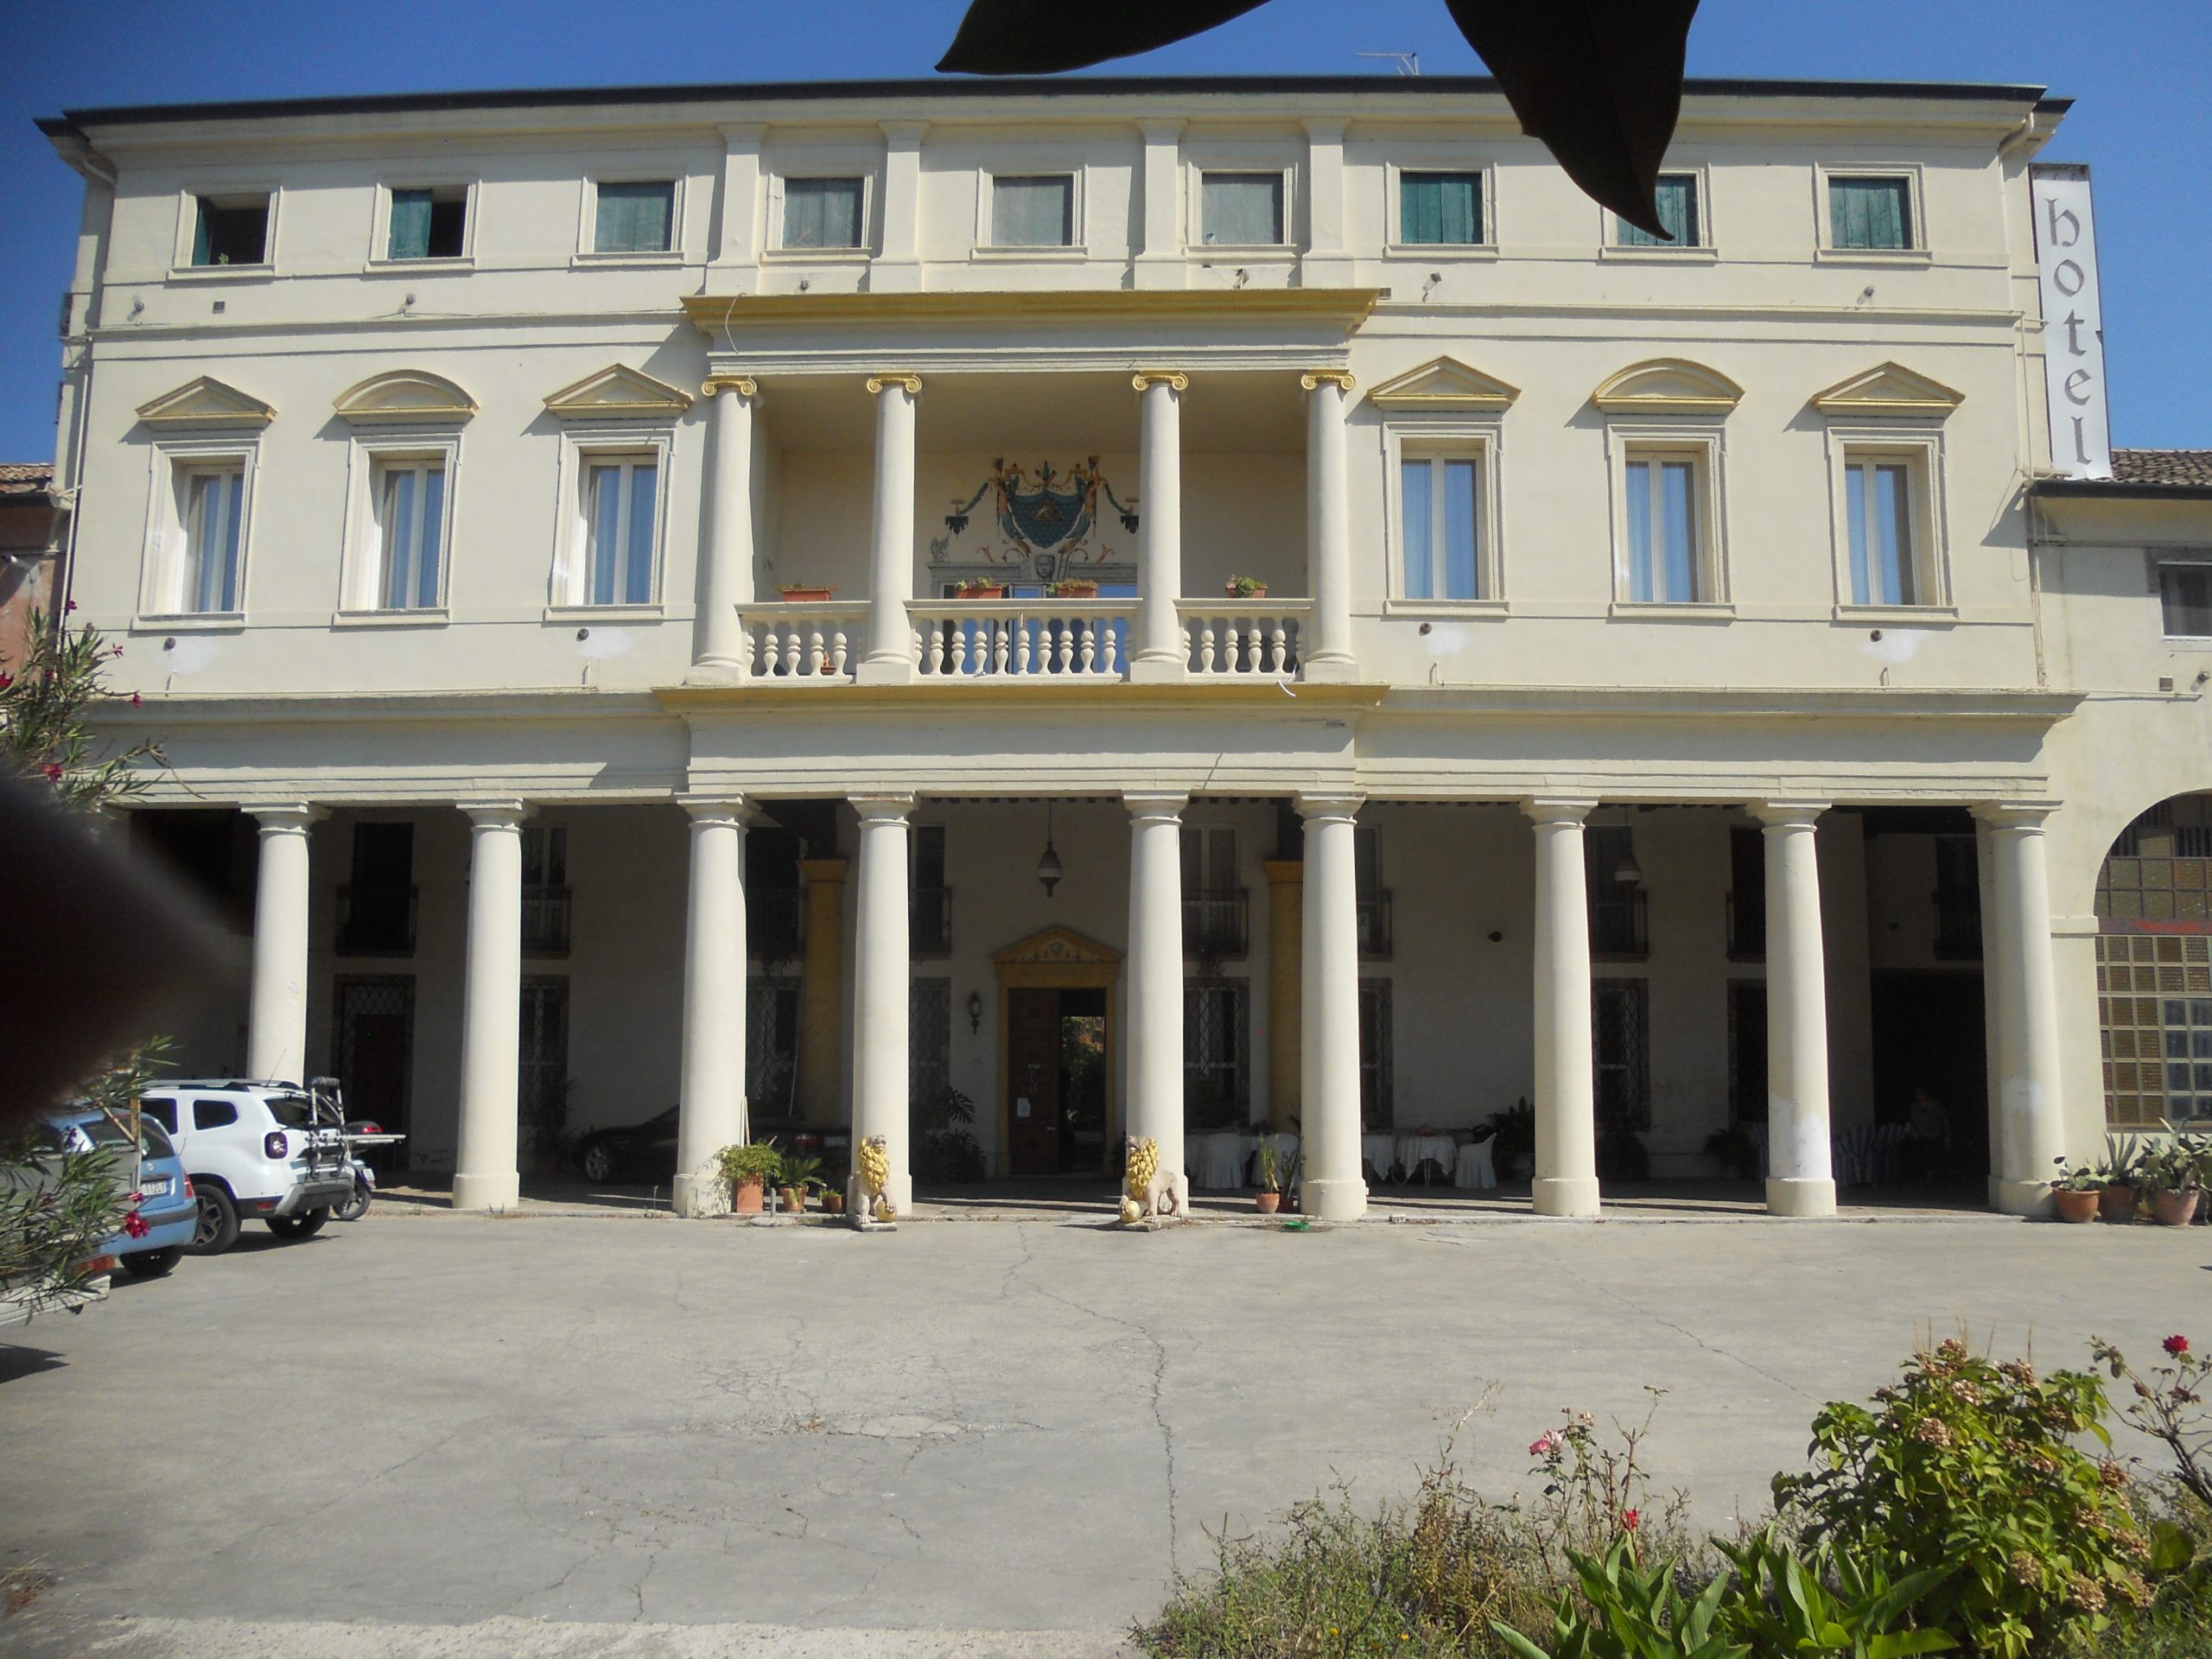 Villa Carrer palazzo centrale